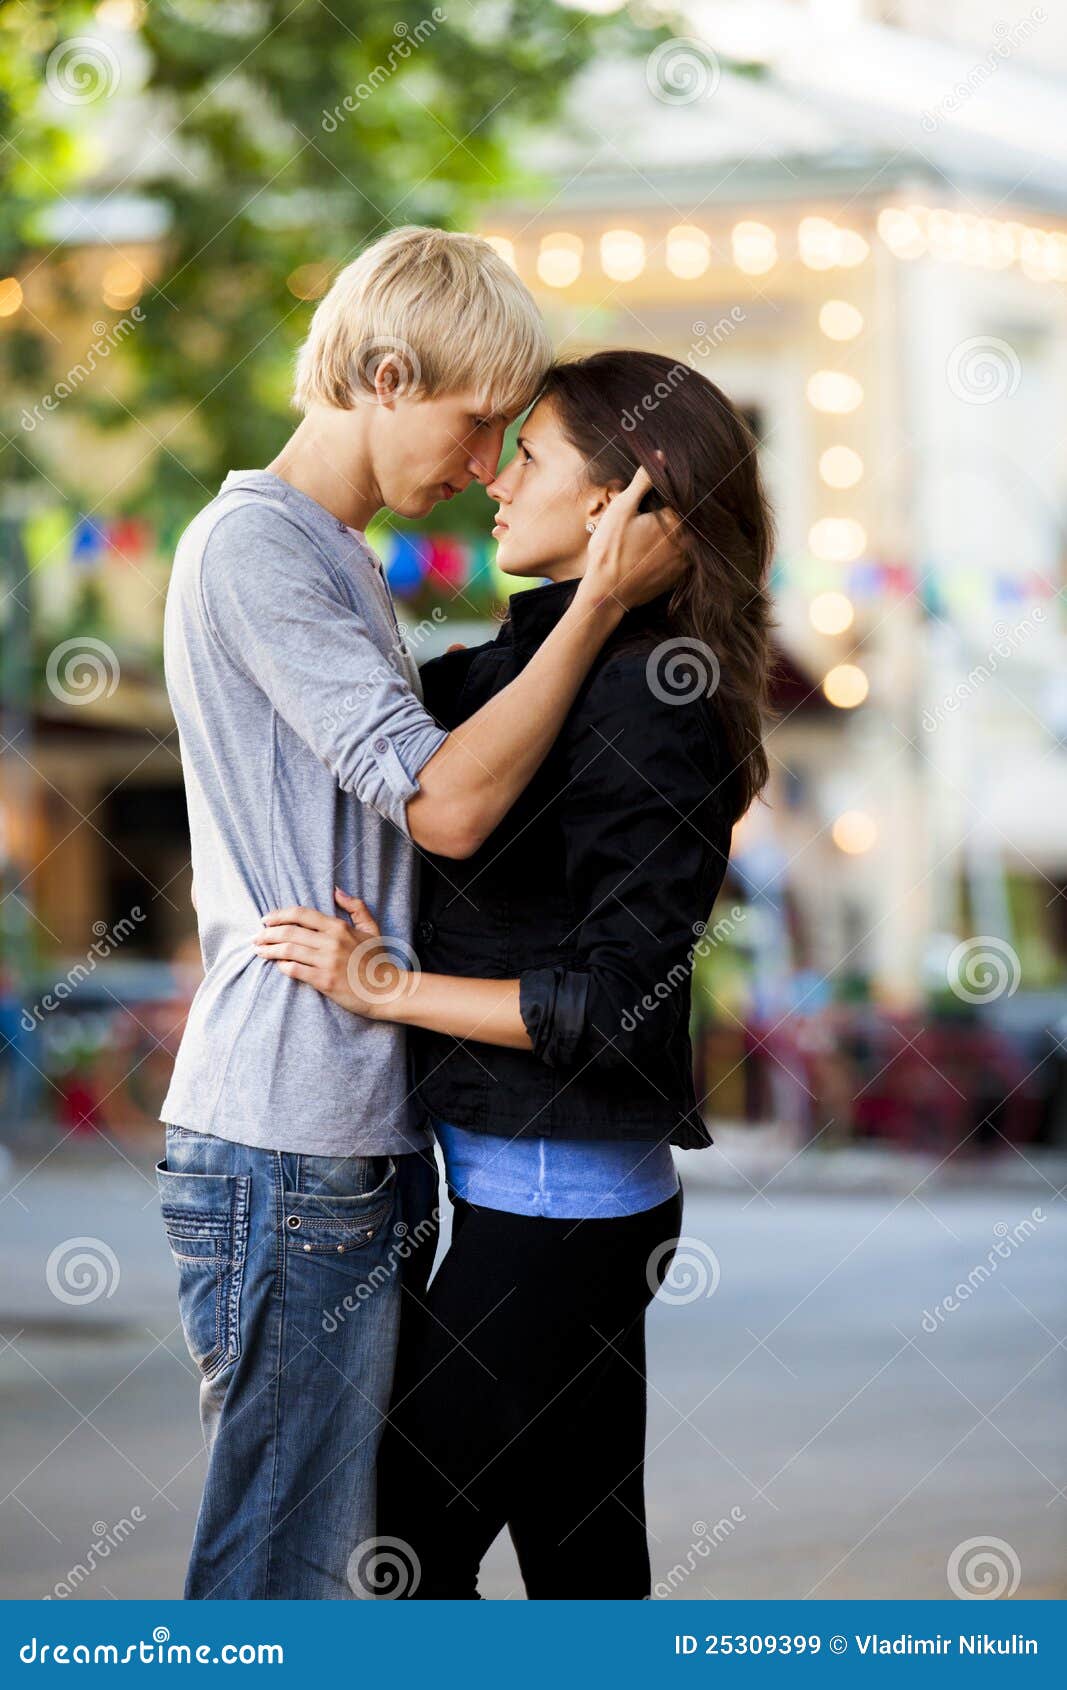 Парень целуется на улице. Поцелуй на улице. Влюблённые подростки. Целуются на улице. Влюбленные целуются на улице.